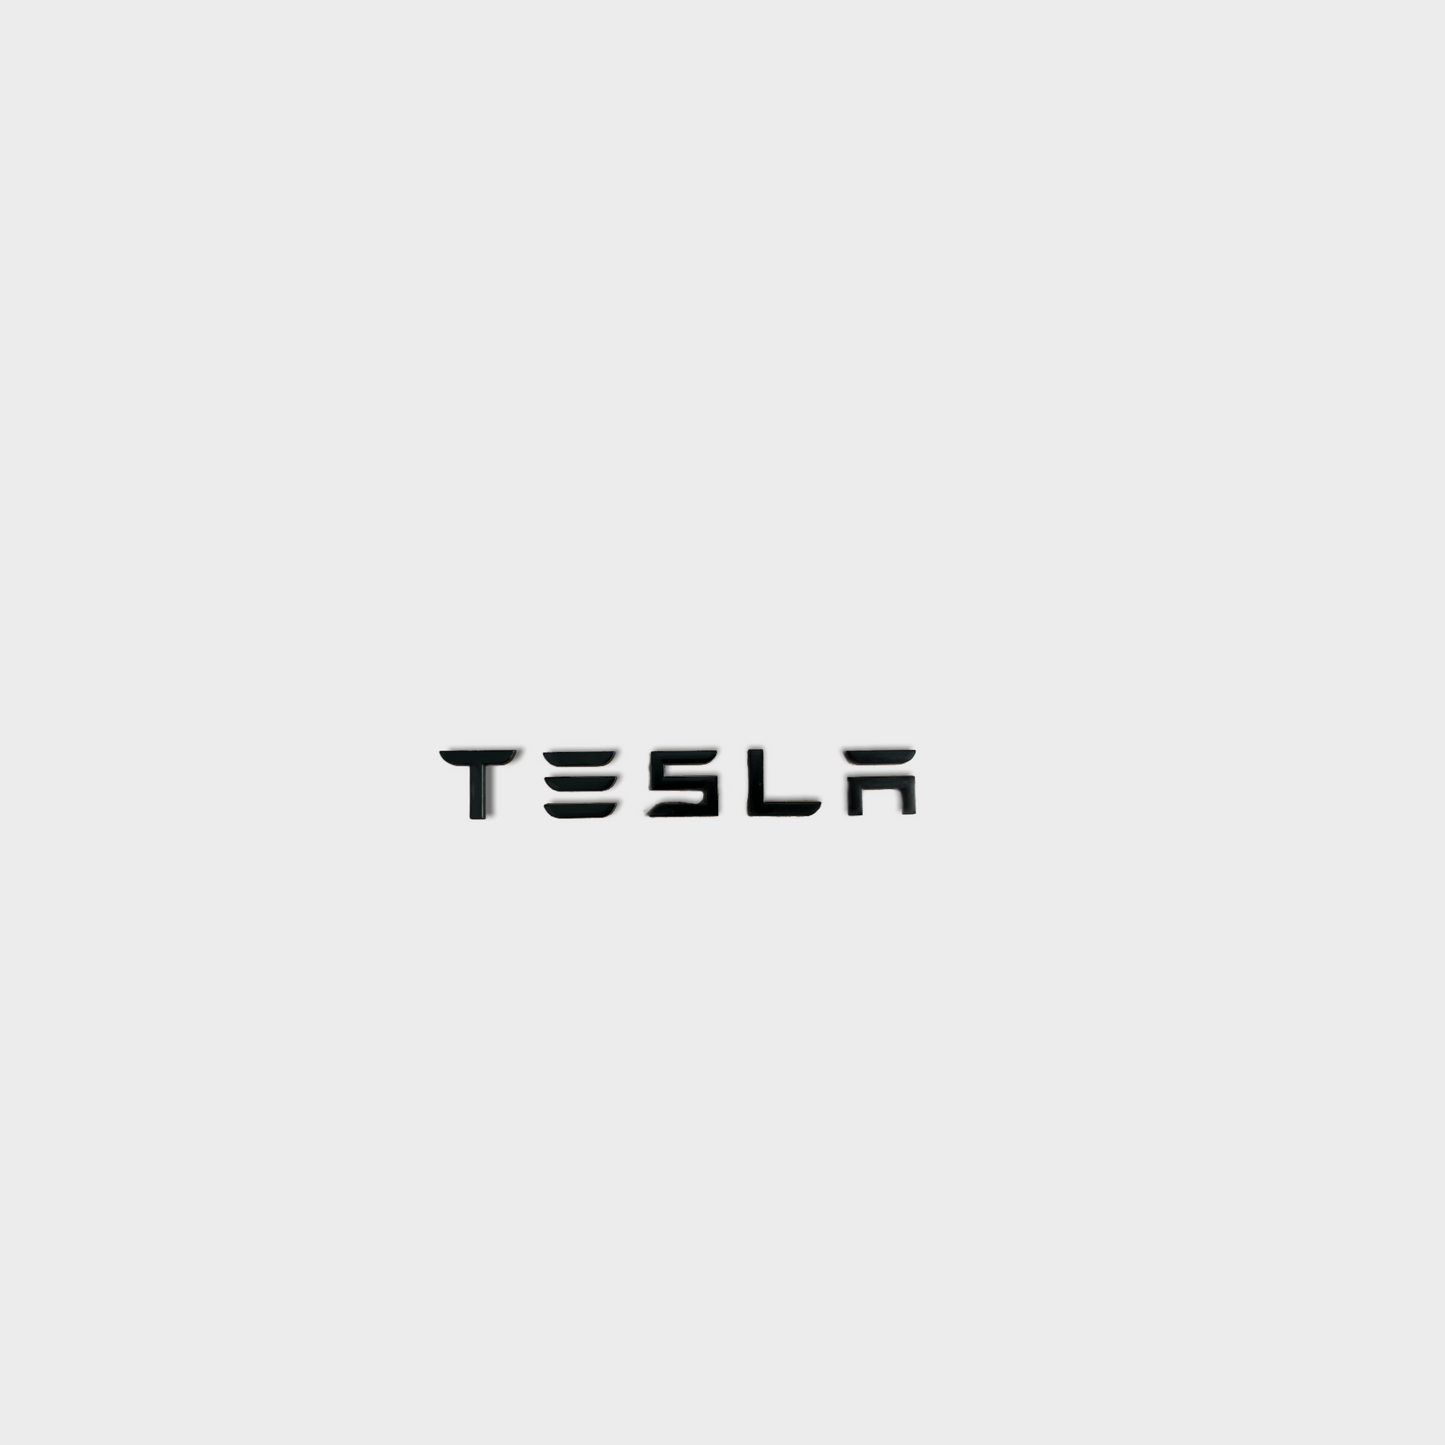 "Tesla" Schriftzug